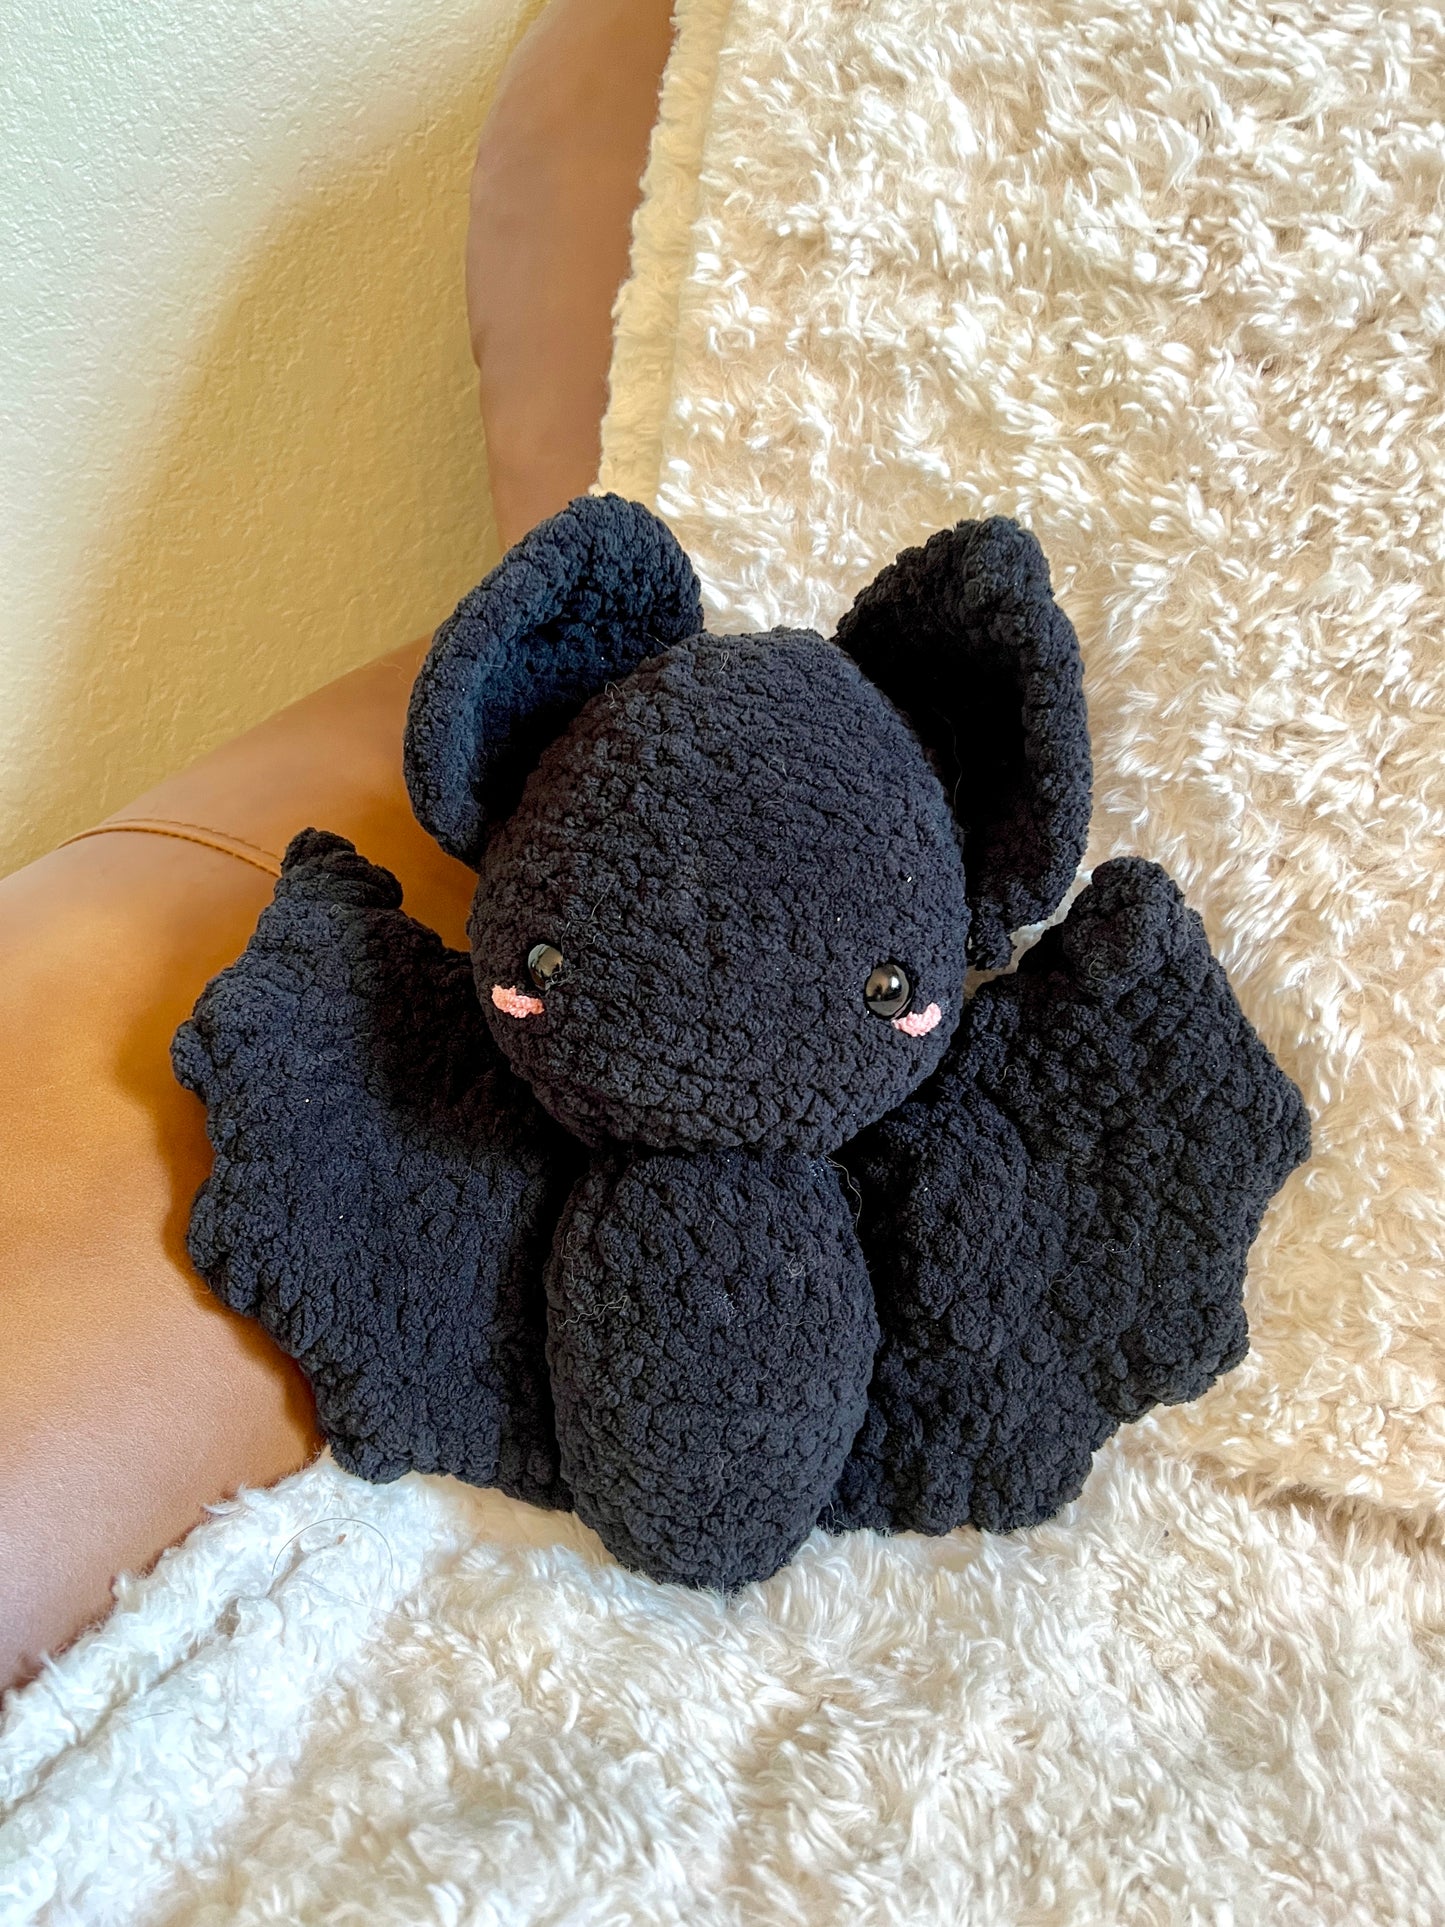 Crochet Bats